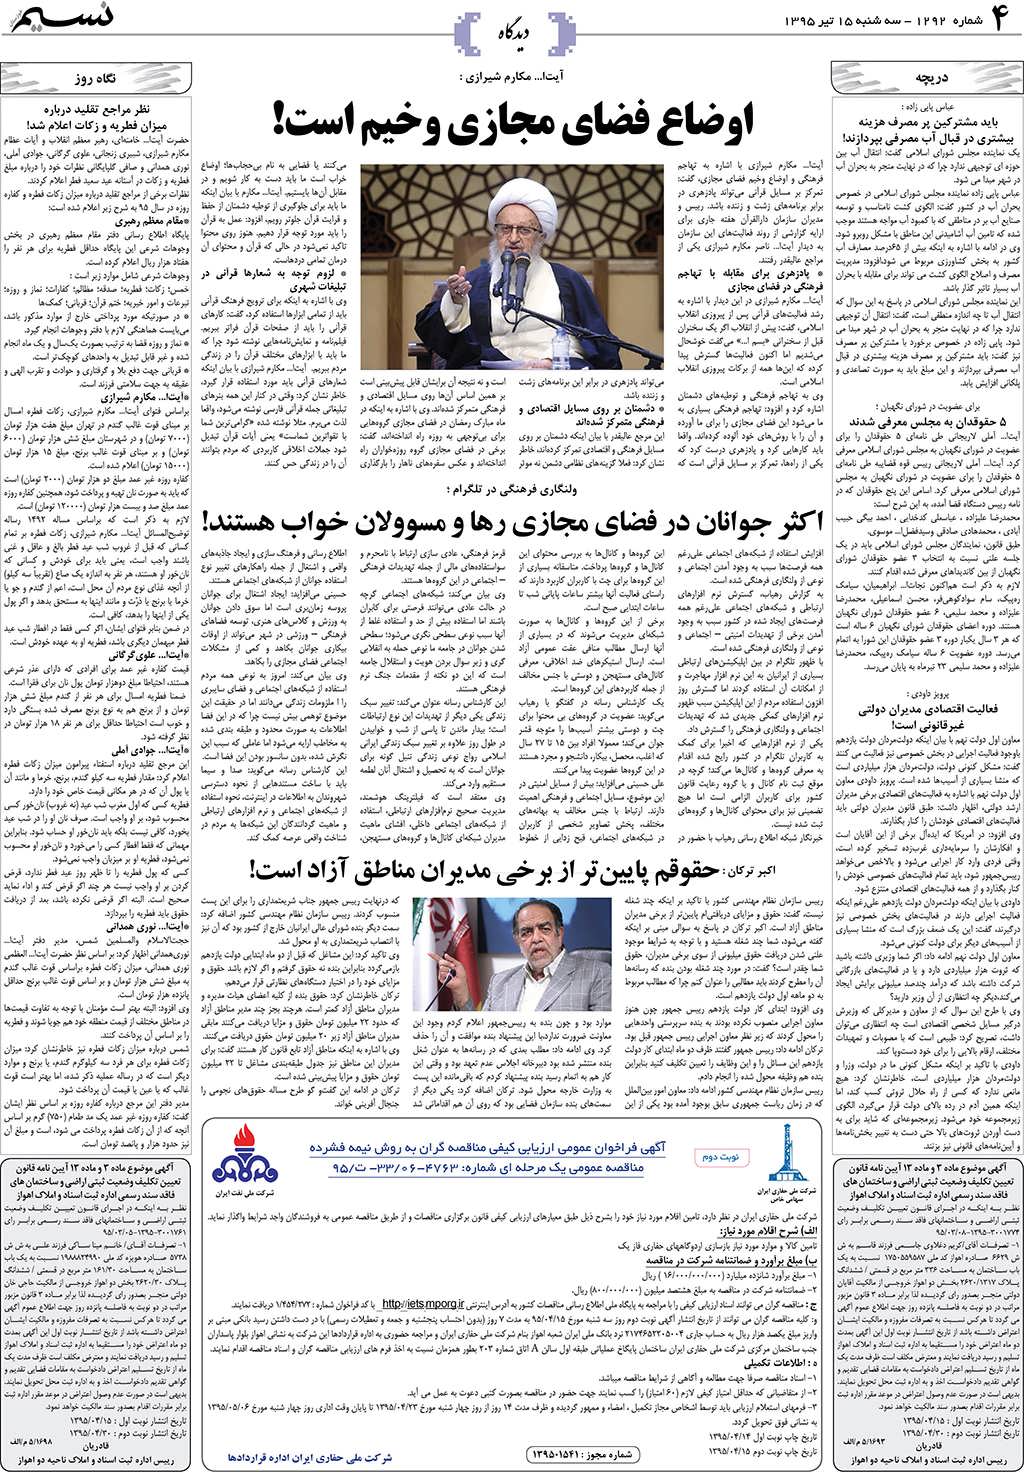 صفحه دیدگاه روزنامه نسیم شماره 1292